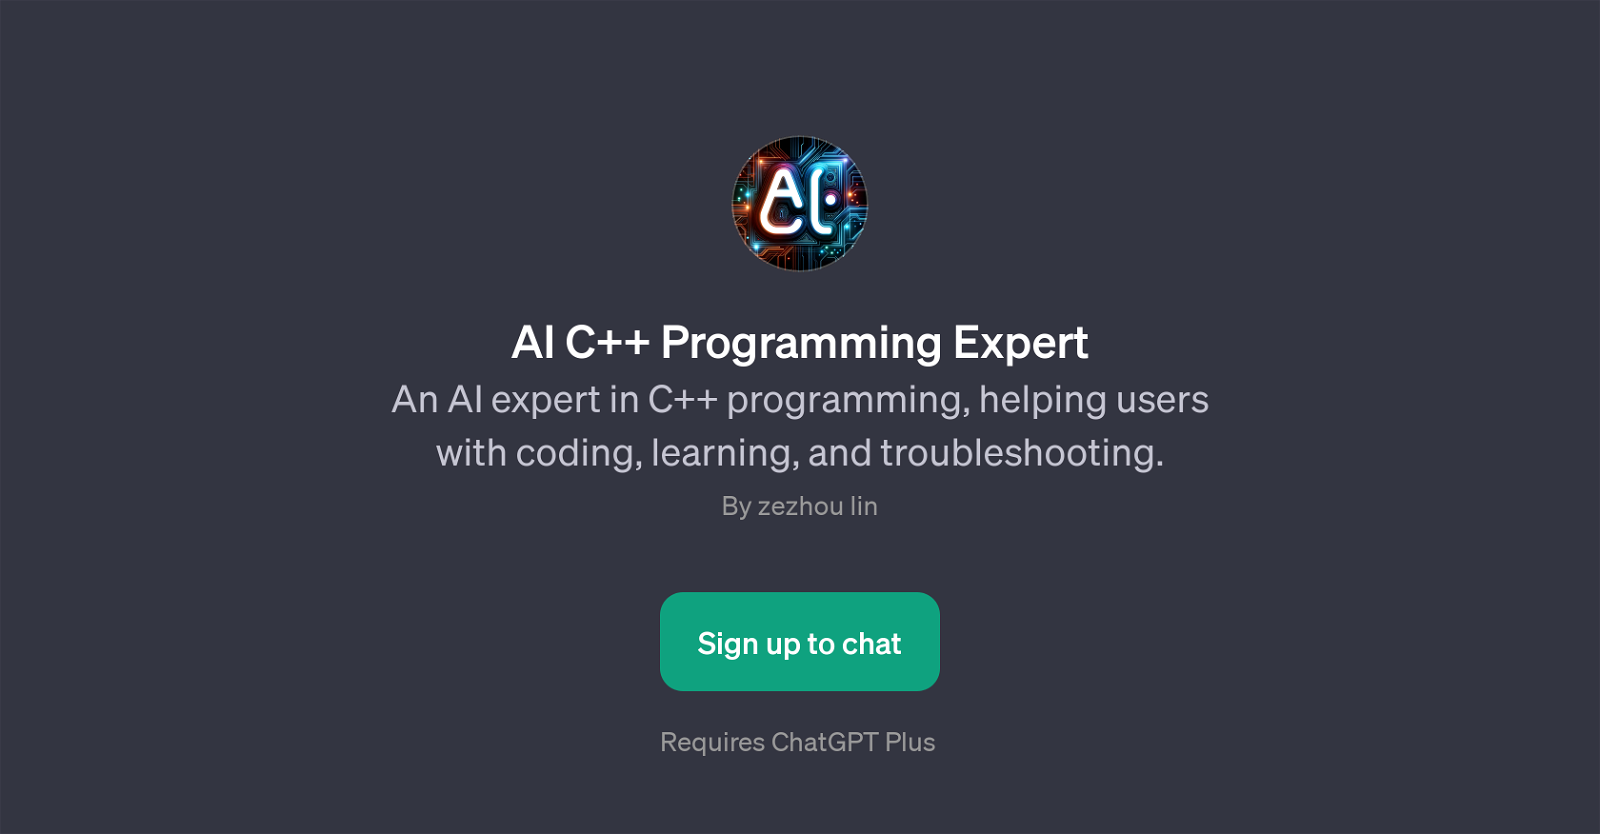 AI C++ Programming Expert website